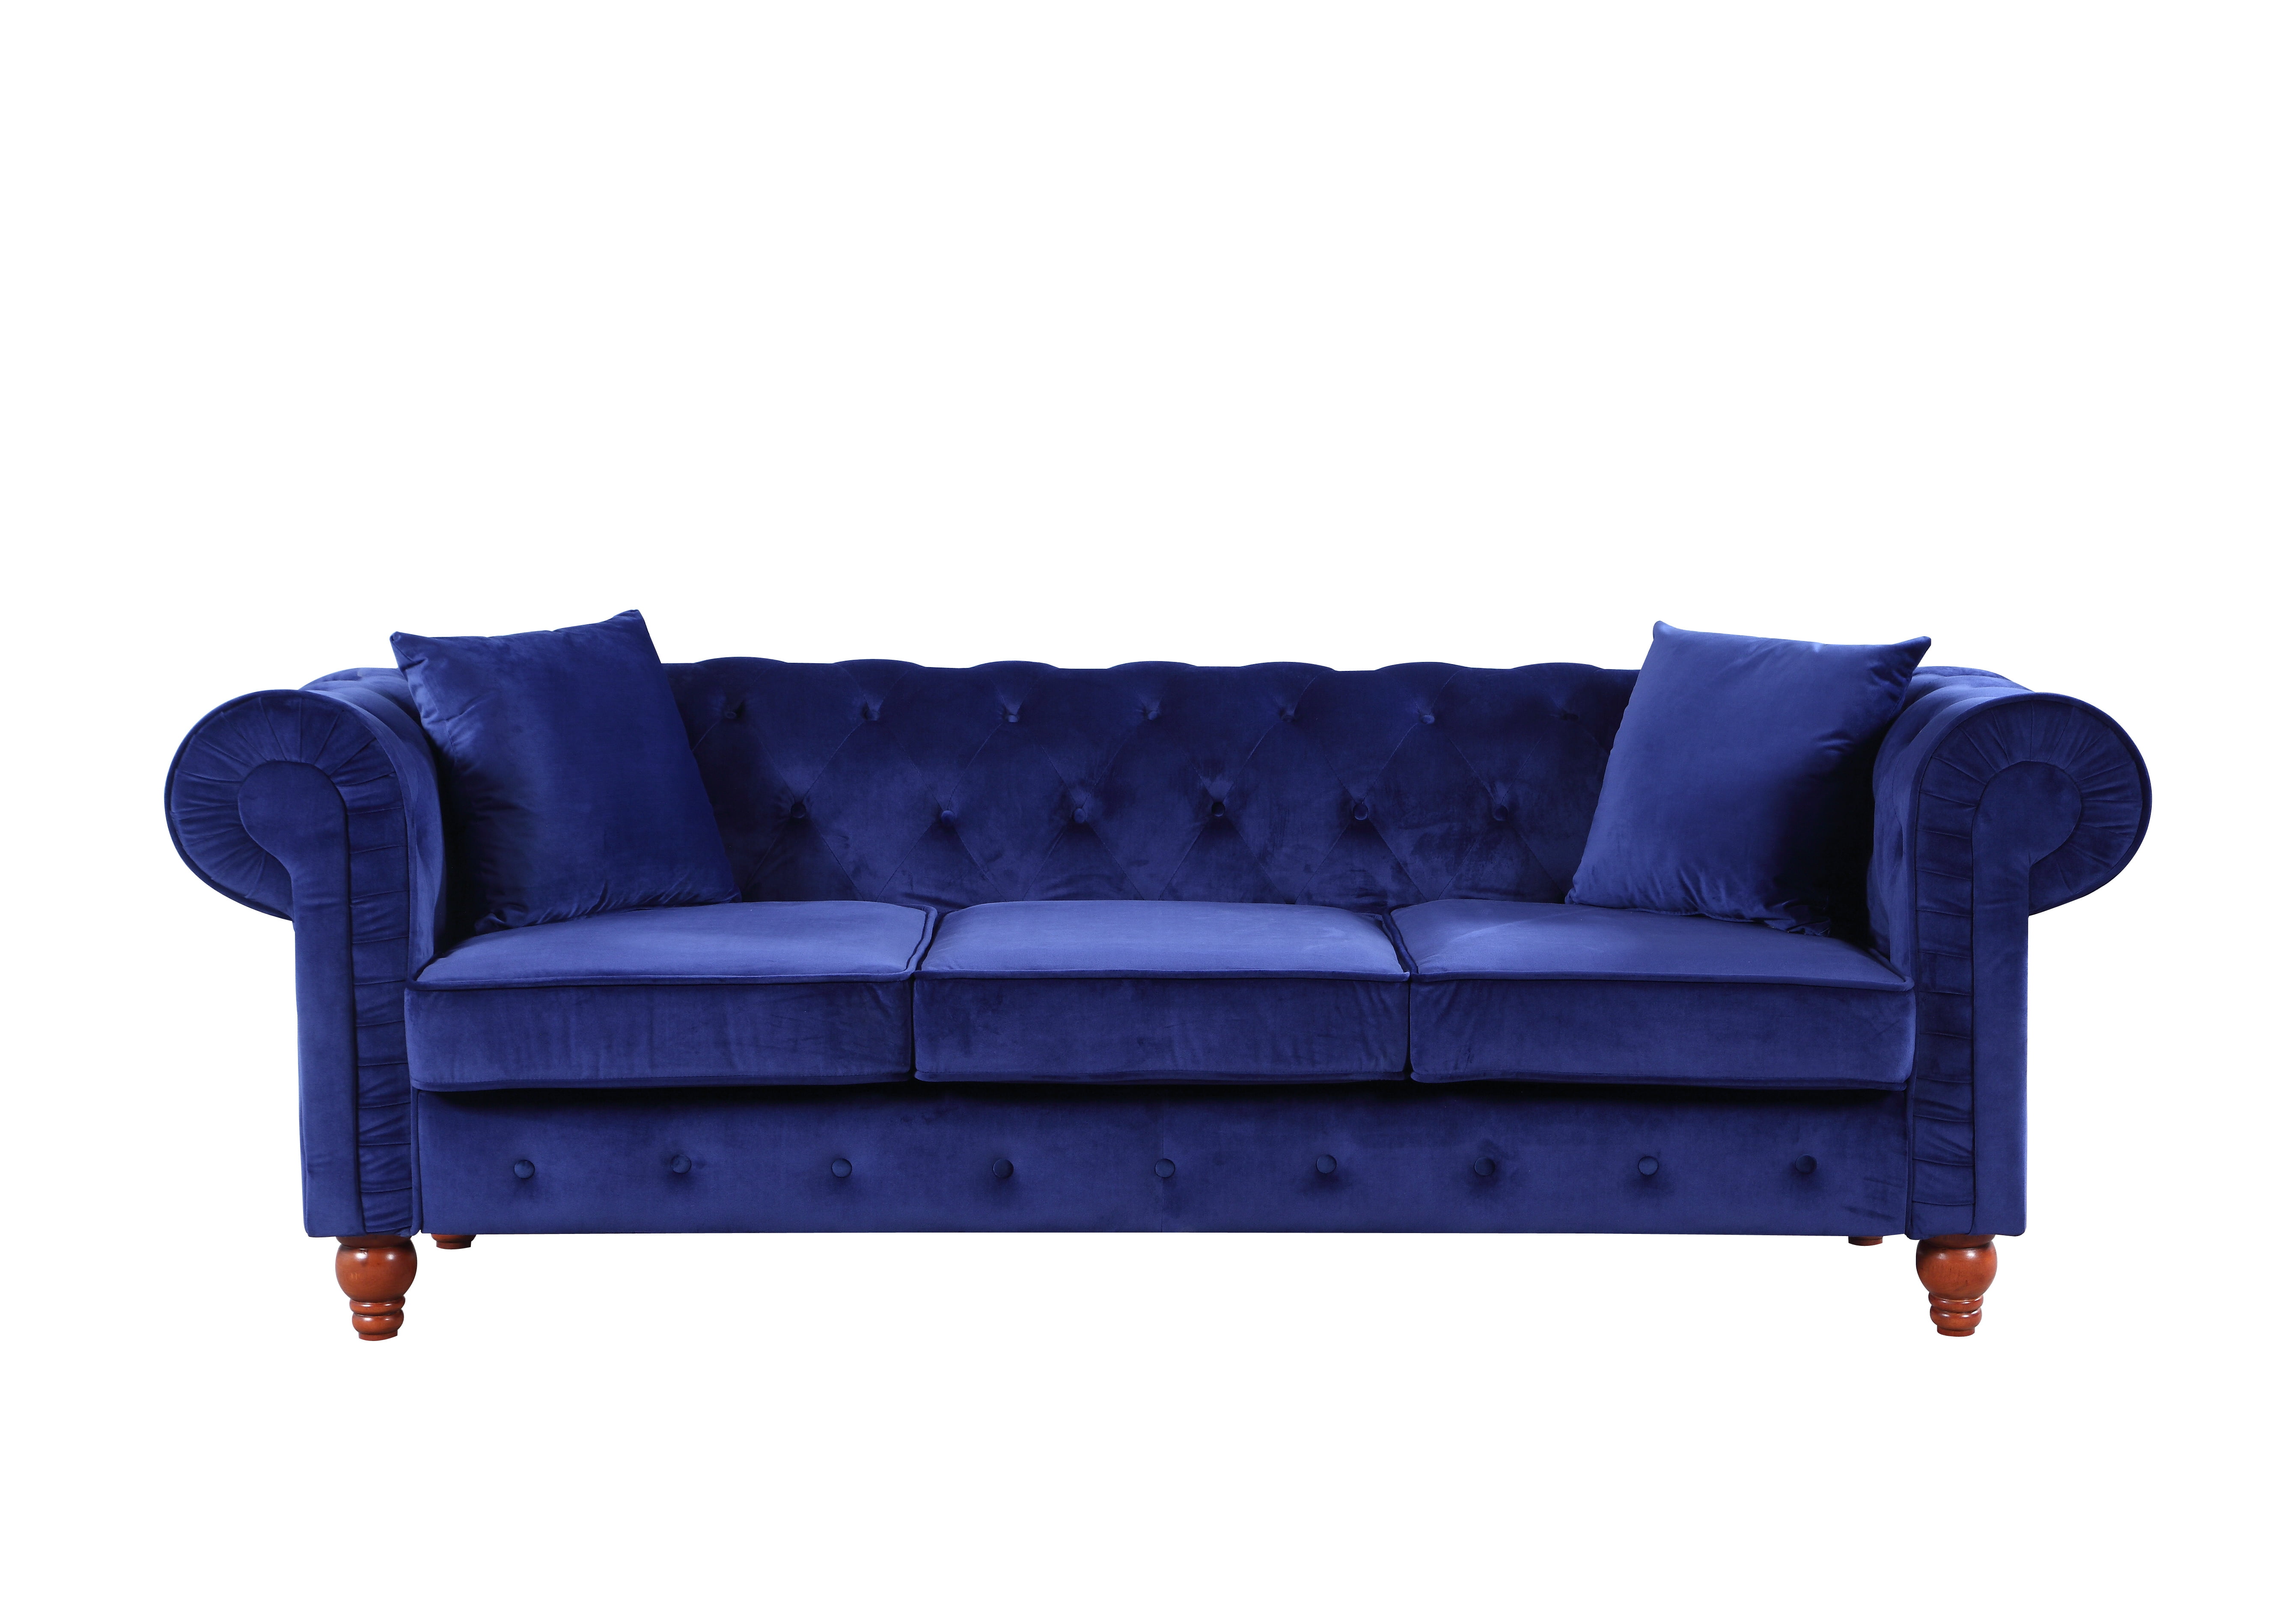 Vintage Style Velvet Chesterfield Sofa In Navy Blue - Walmart.com